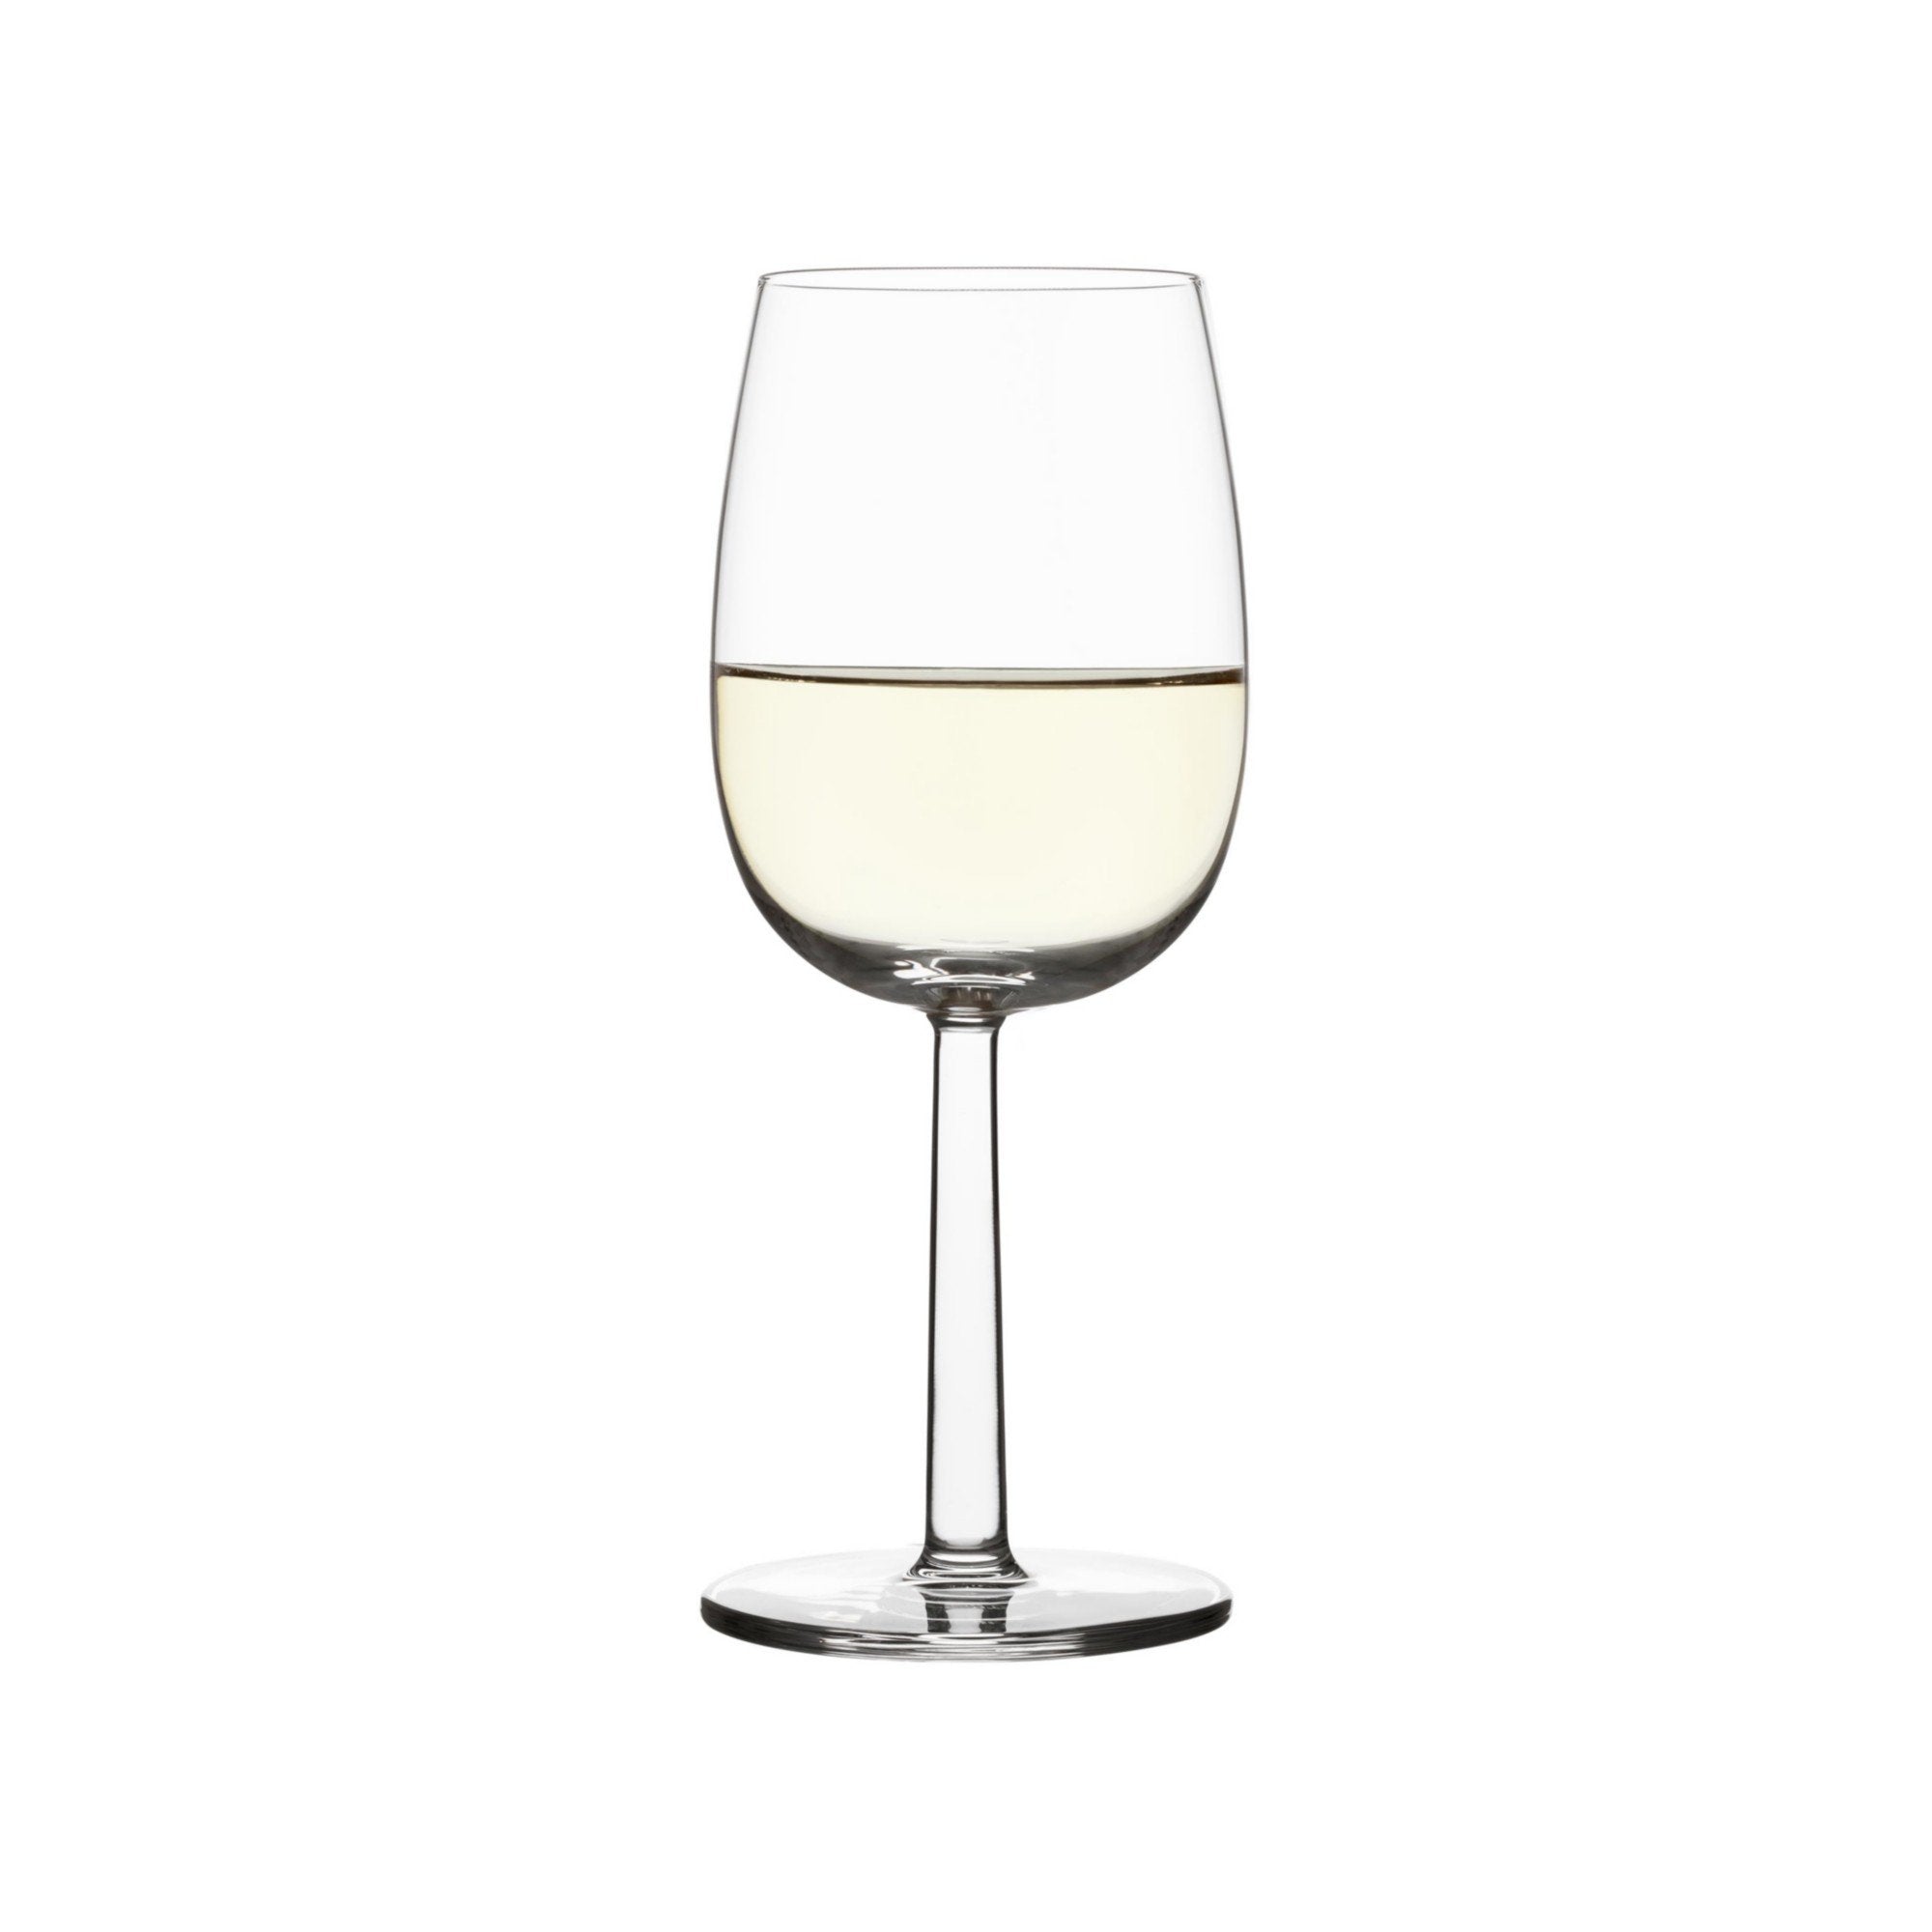 Iittala Raami Białe kieliszki do wina Clear 2pcs, 28cl